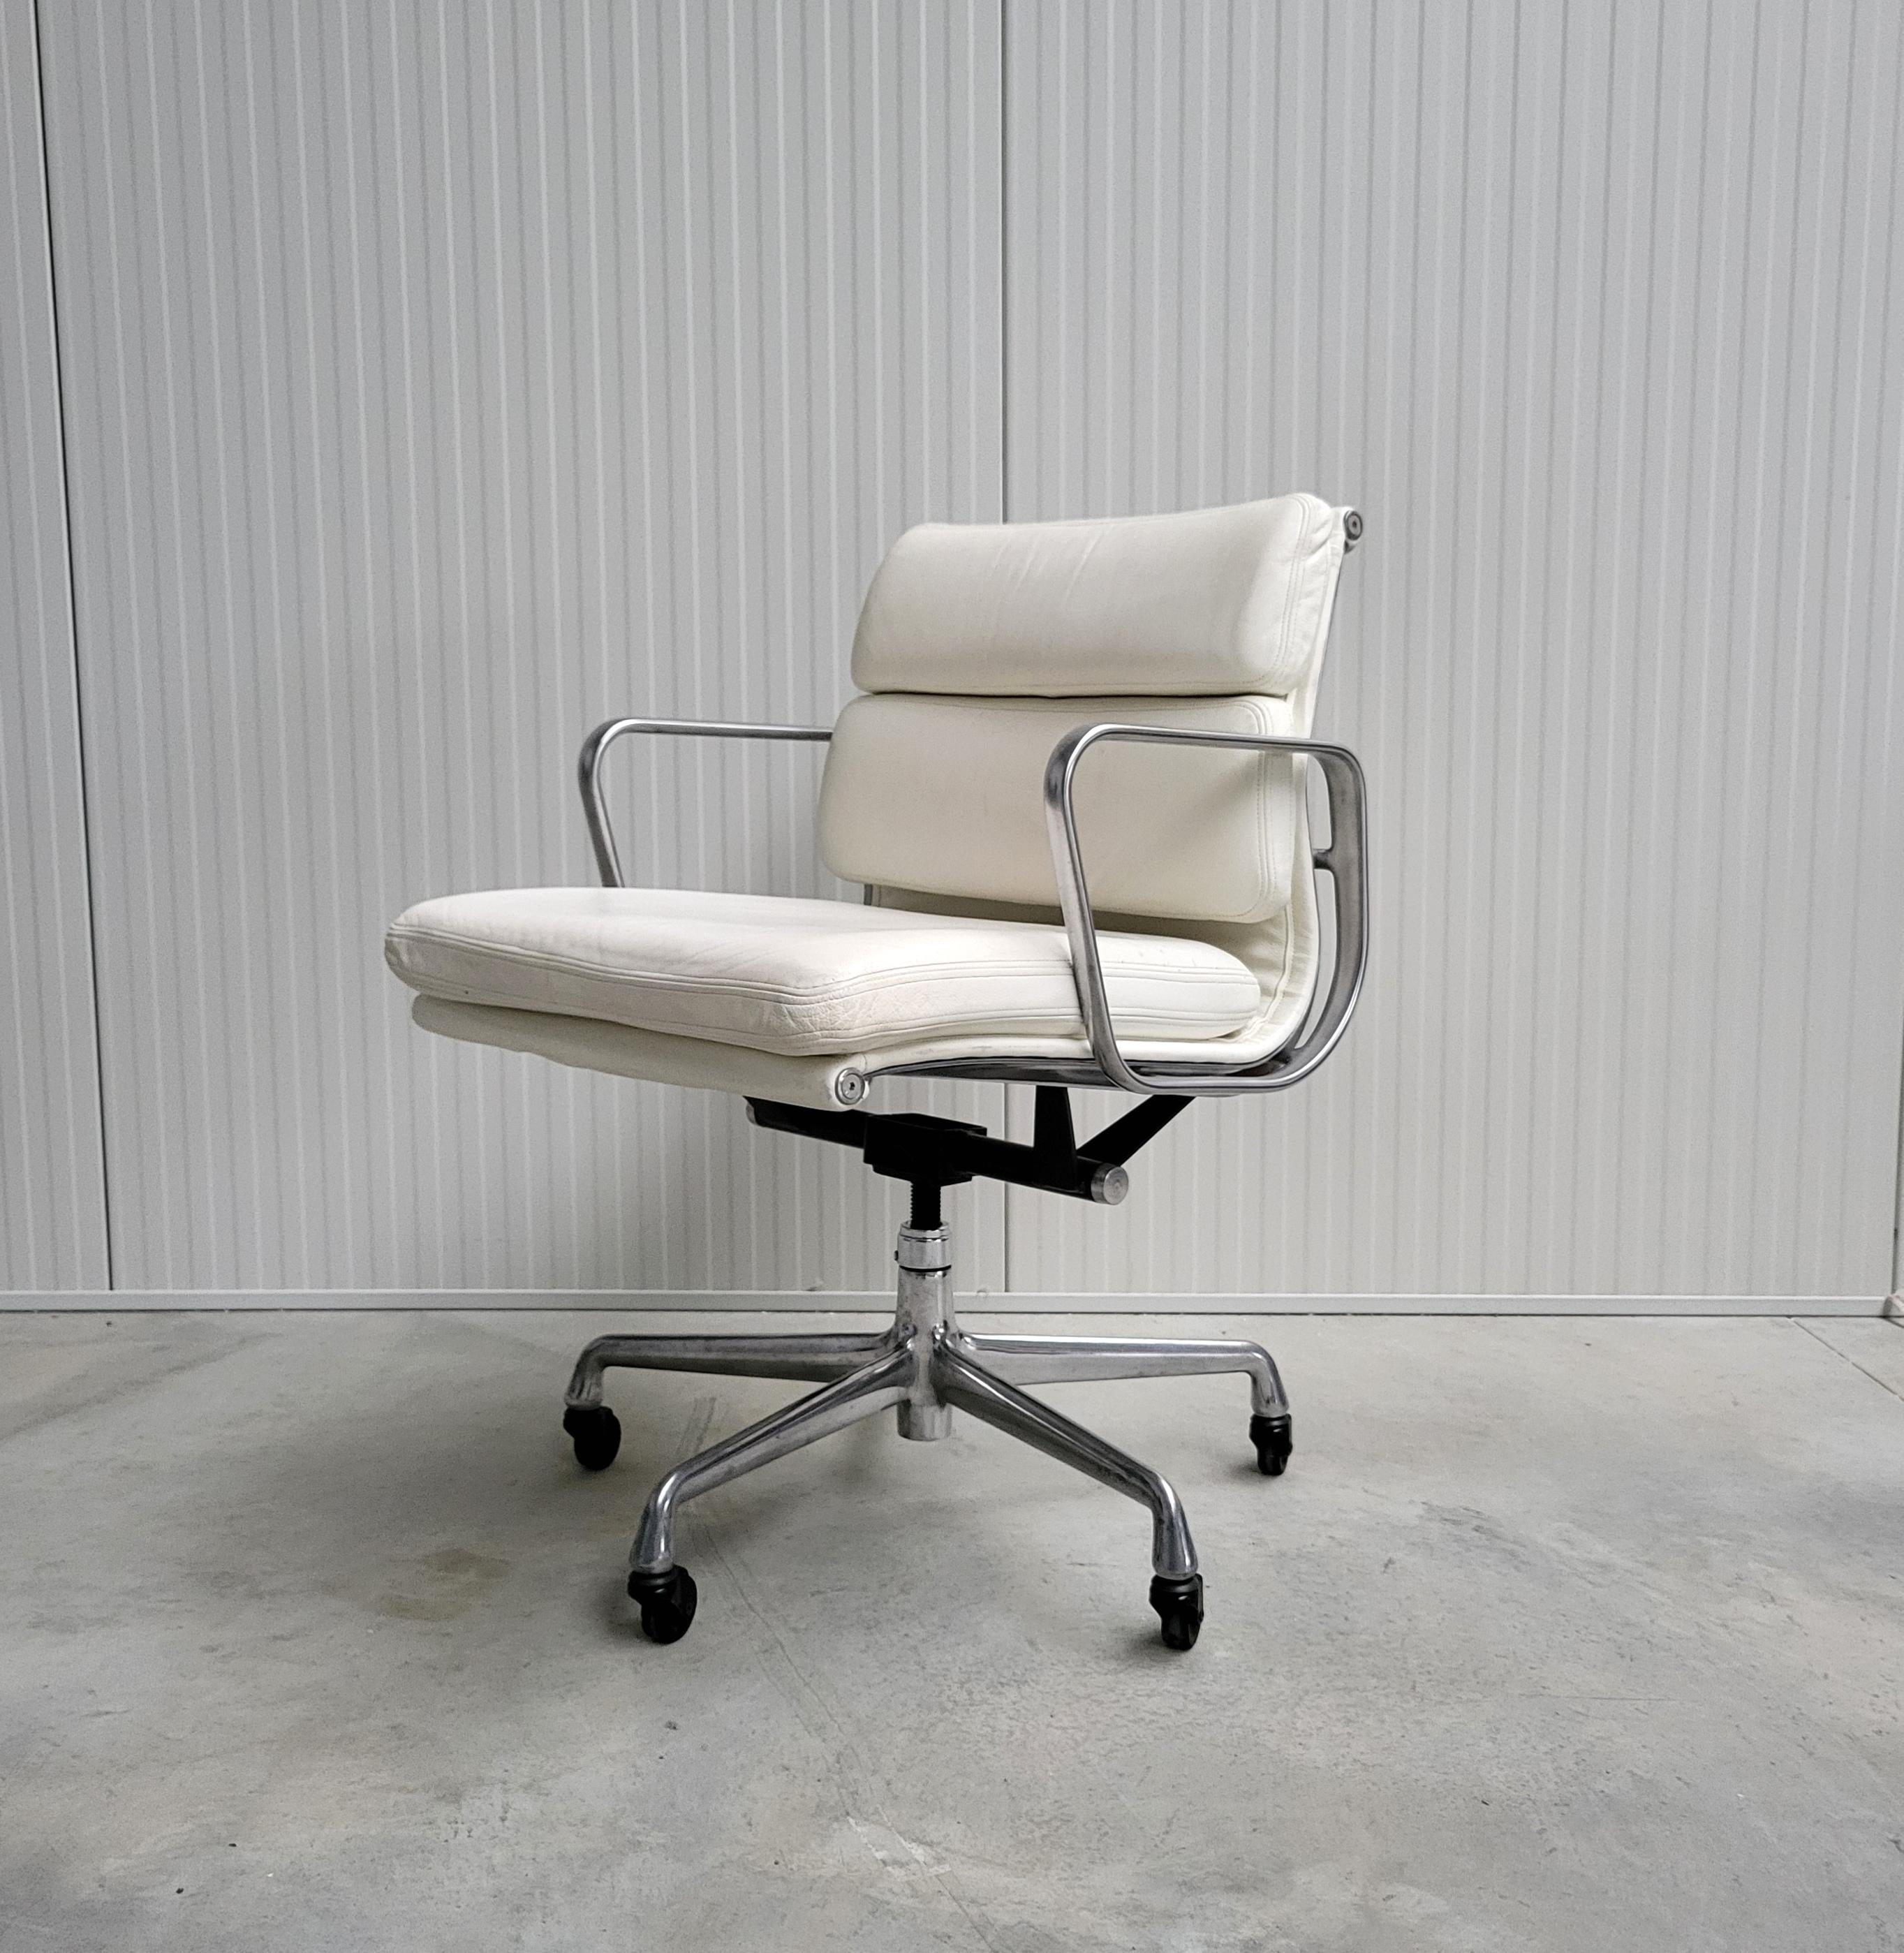 Très belle chaise de bureau à rembourrage souple modèle EA335 produite par Herman Miller. 
La chaise est dotée d'un cadre en aluminium poli et a été fabriquée au début des années 2000.

La chaise est réglable en hauteur et dispose d'un mécanisme